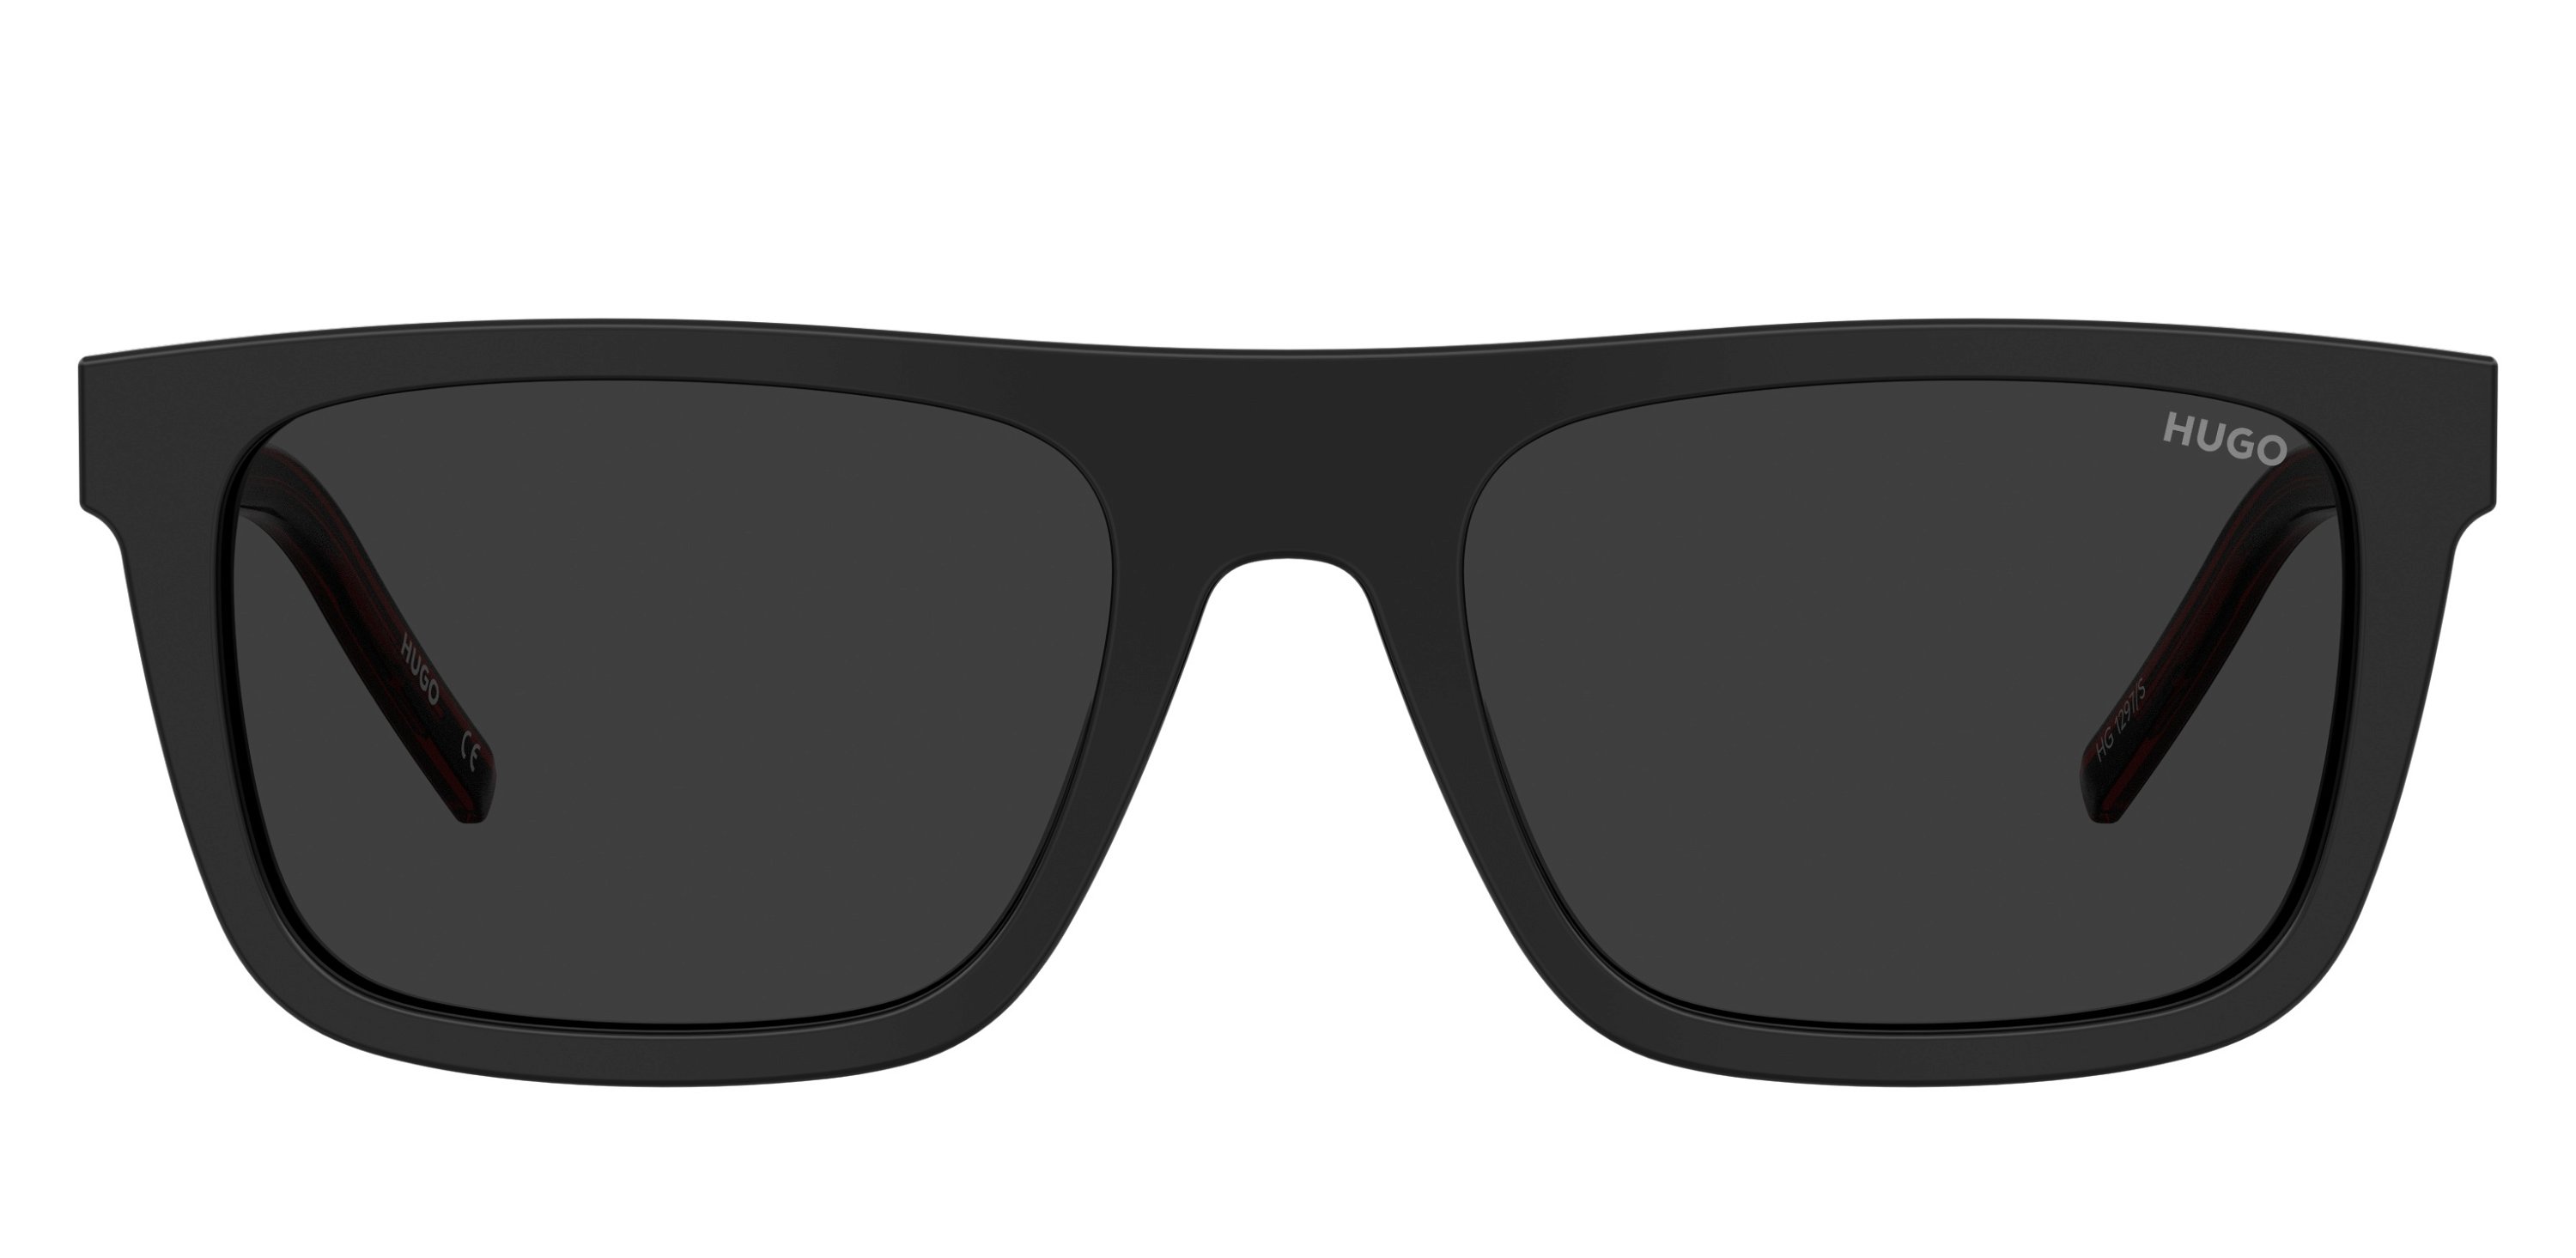 Das Bild zeigt die Sonnenbrille HG1297/S OIT von der Marke Hugo in rot/schwarz.